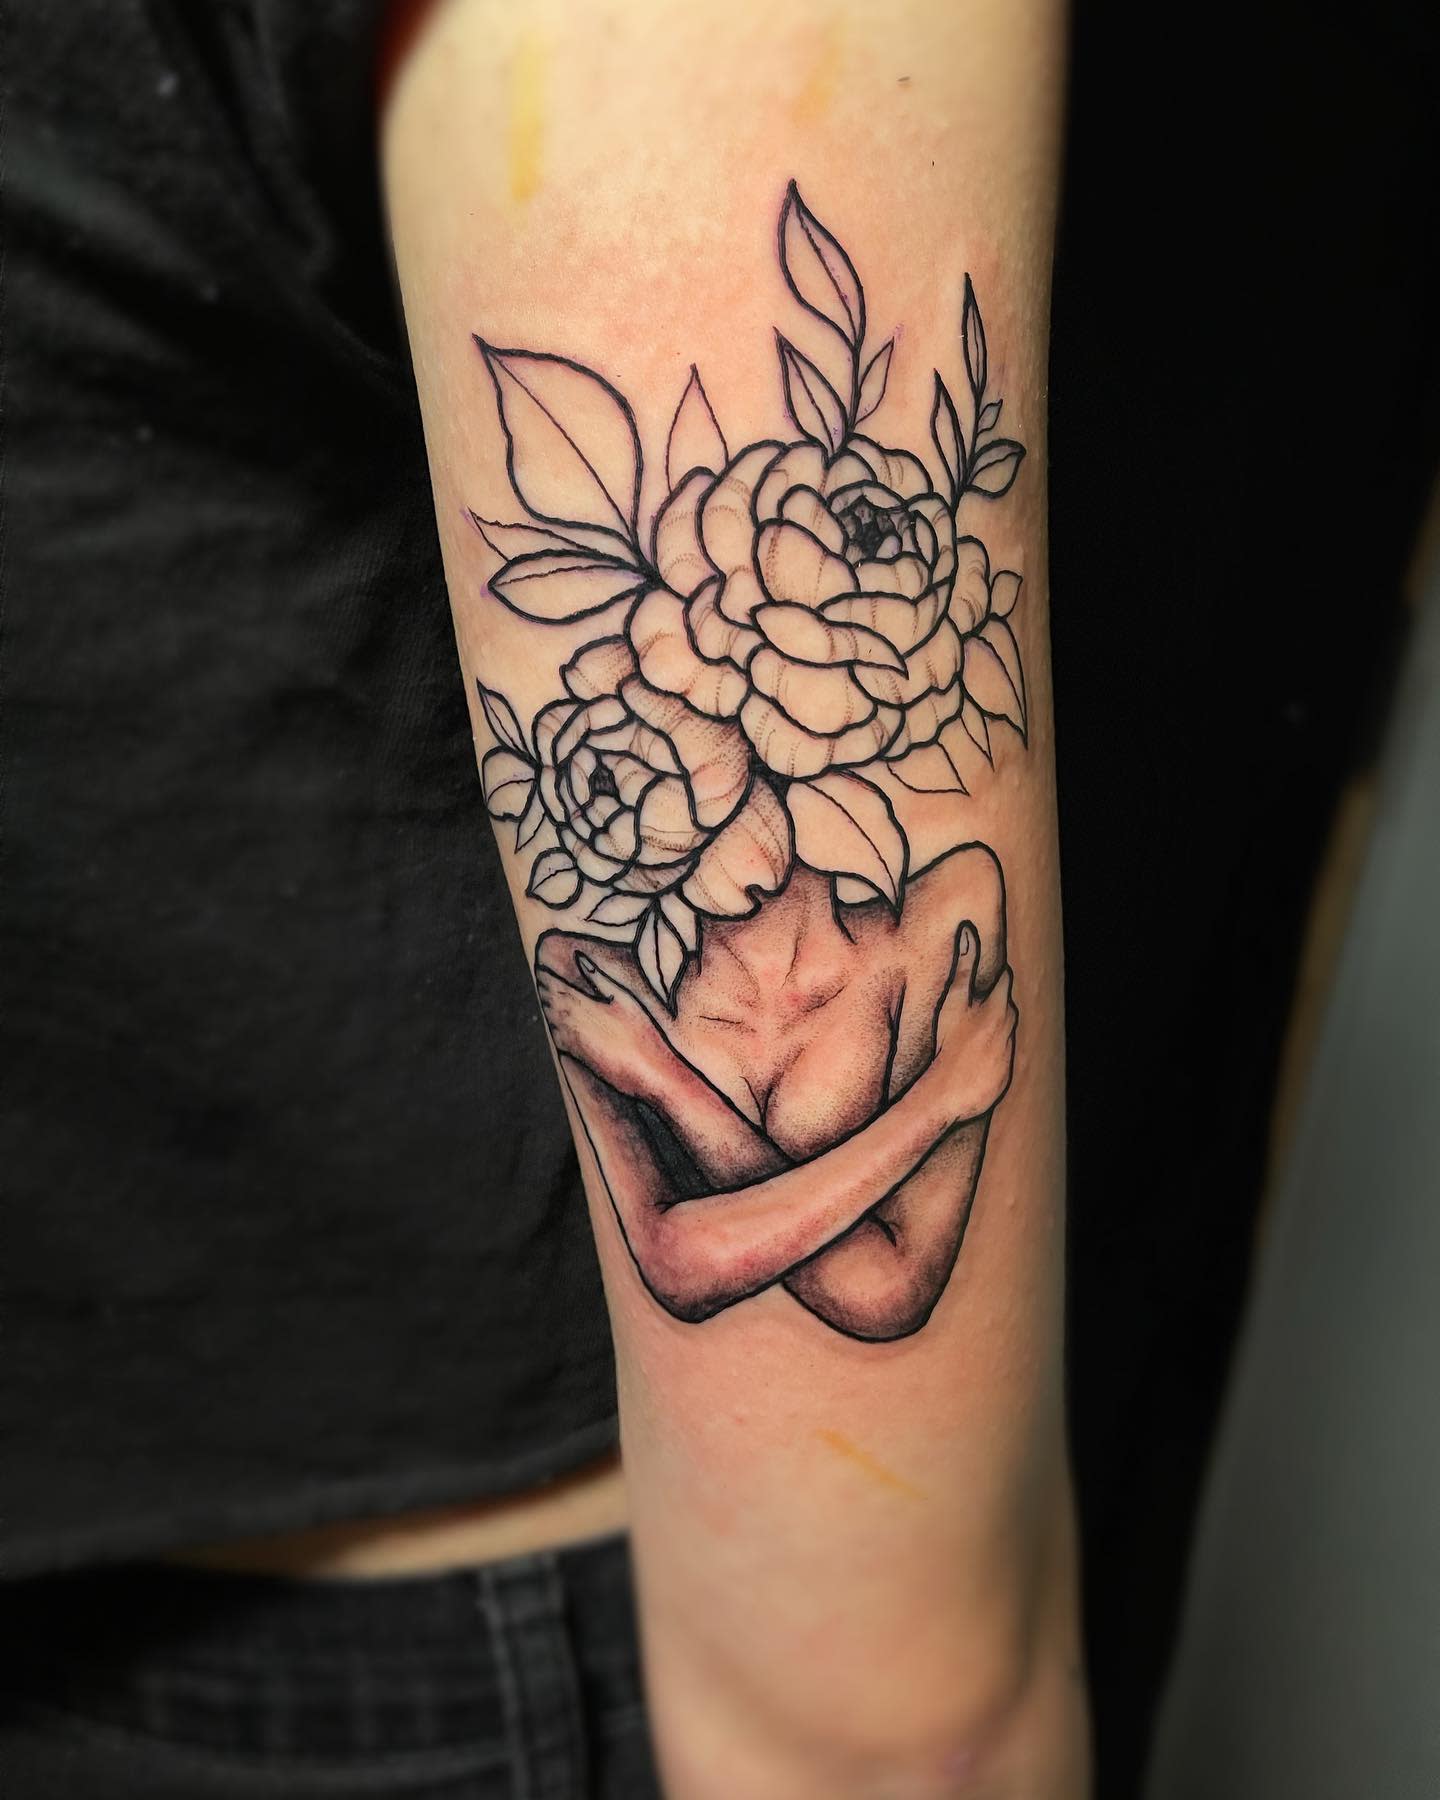 Self Love Flower Tattoo -wynningtattoos